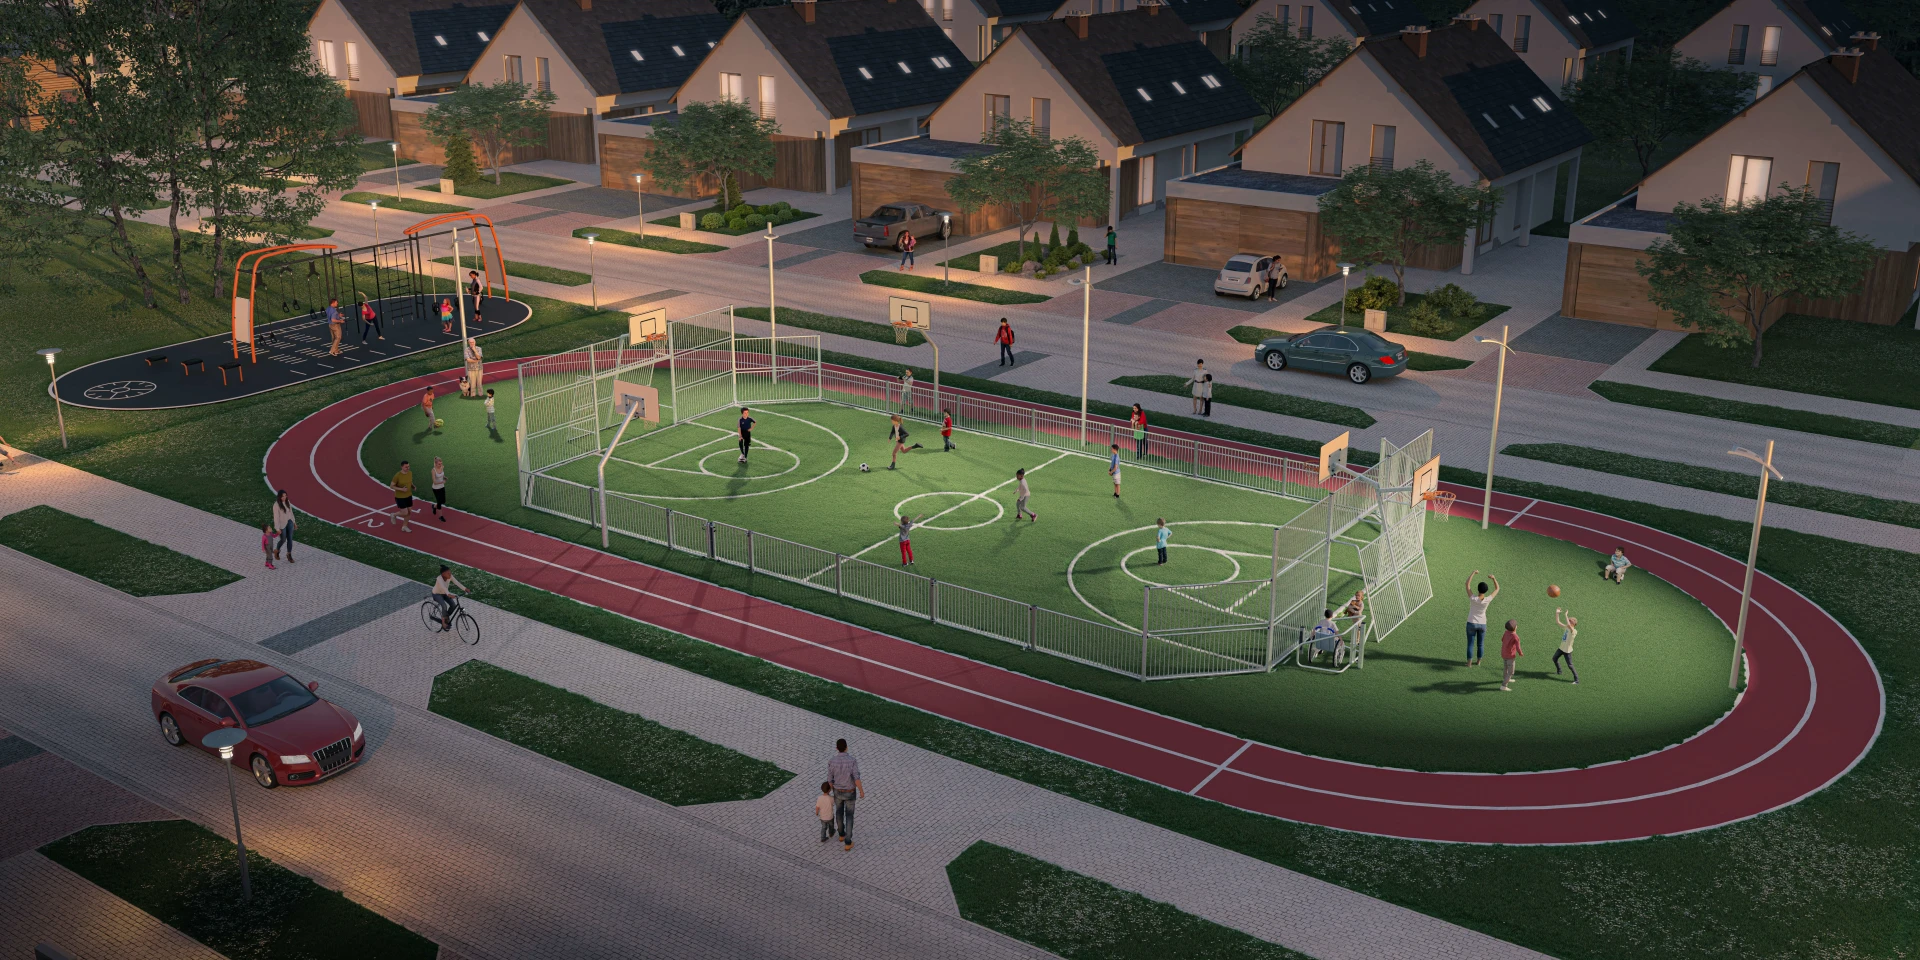 Design-Lösung einer Multiballsport-Arena für die Bewohner in Vororten